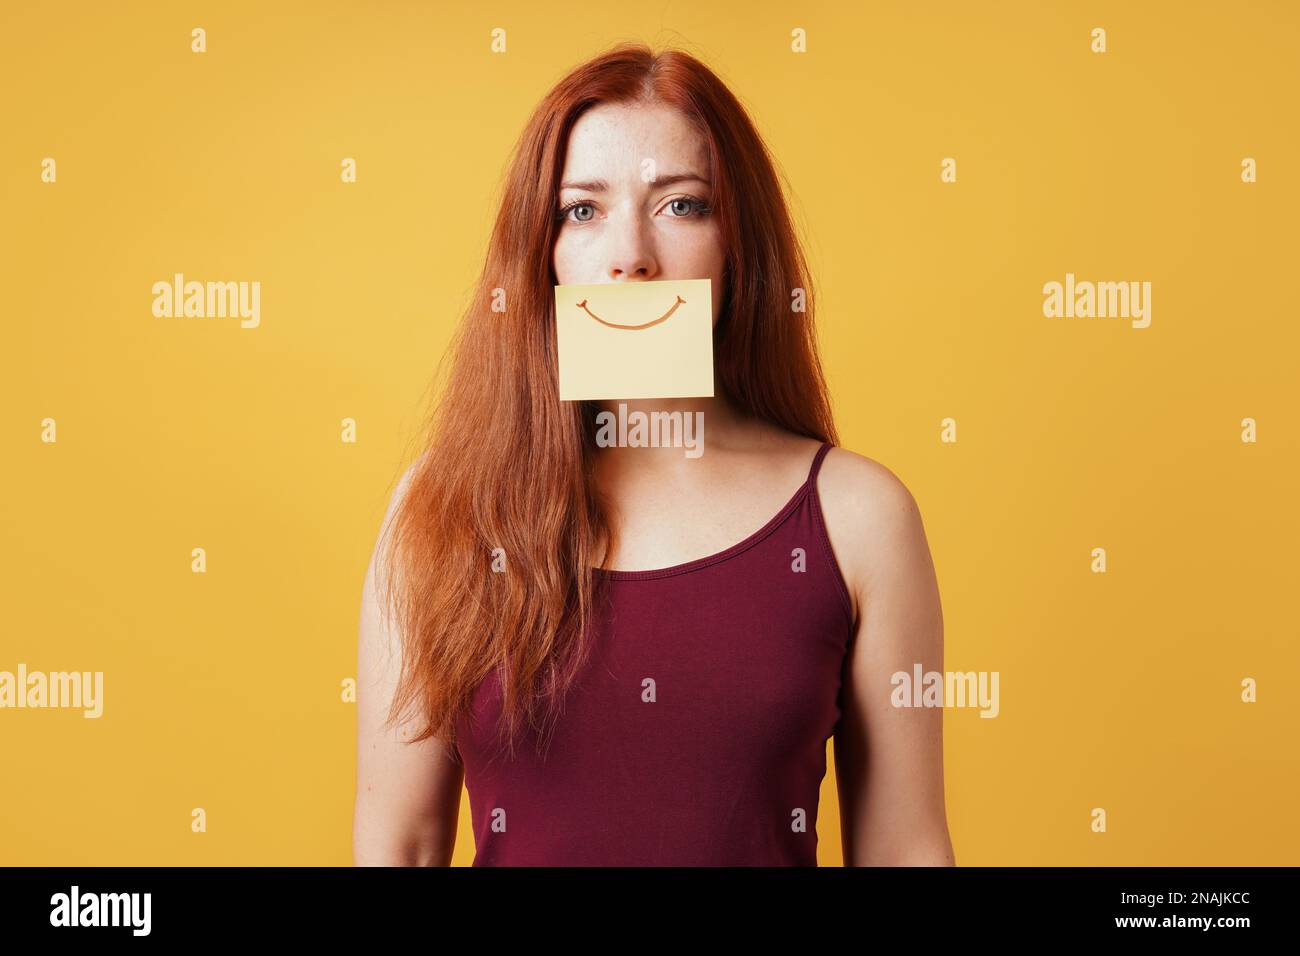 giovane donna che nasconde tristezza o depressione dietro falso sorriso disegnato su carta gialla per note adesive Foto Stock